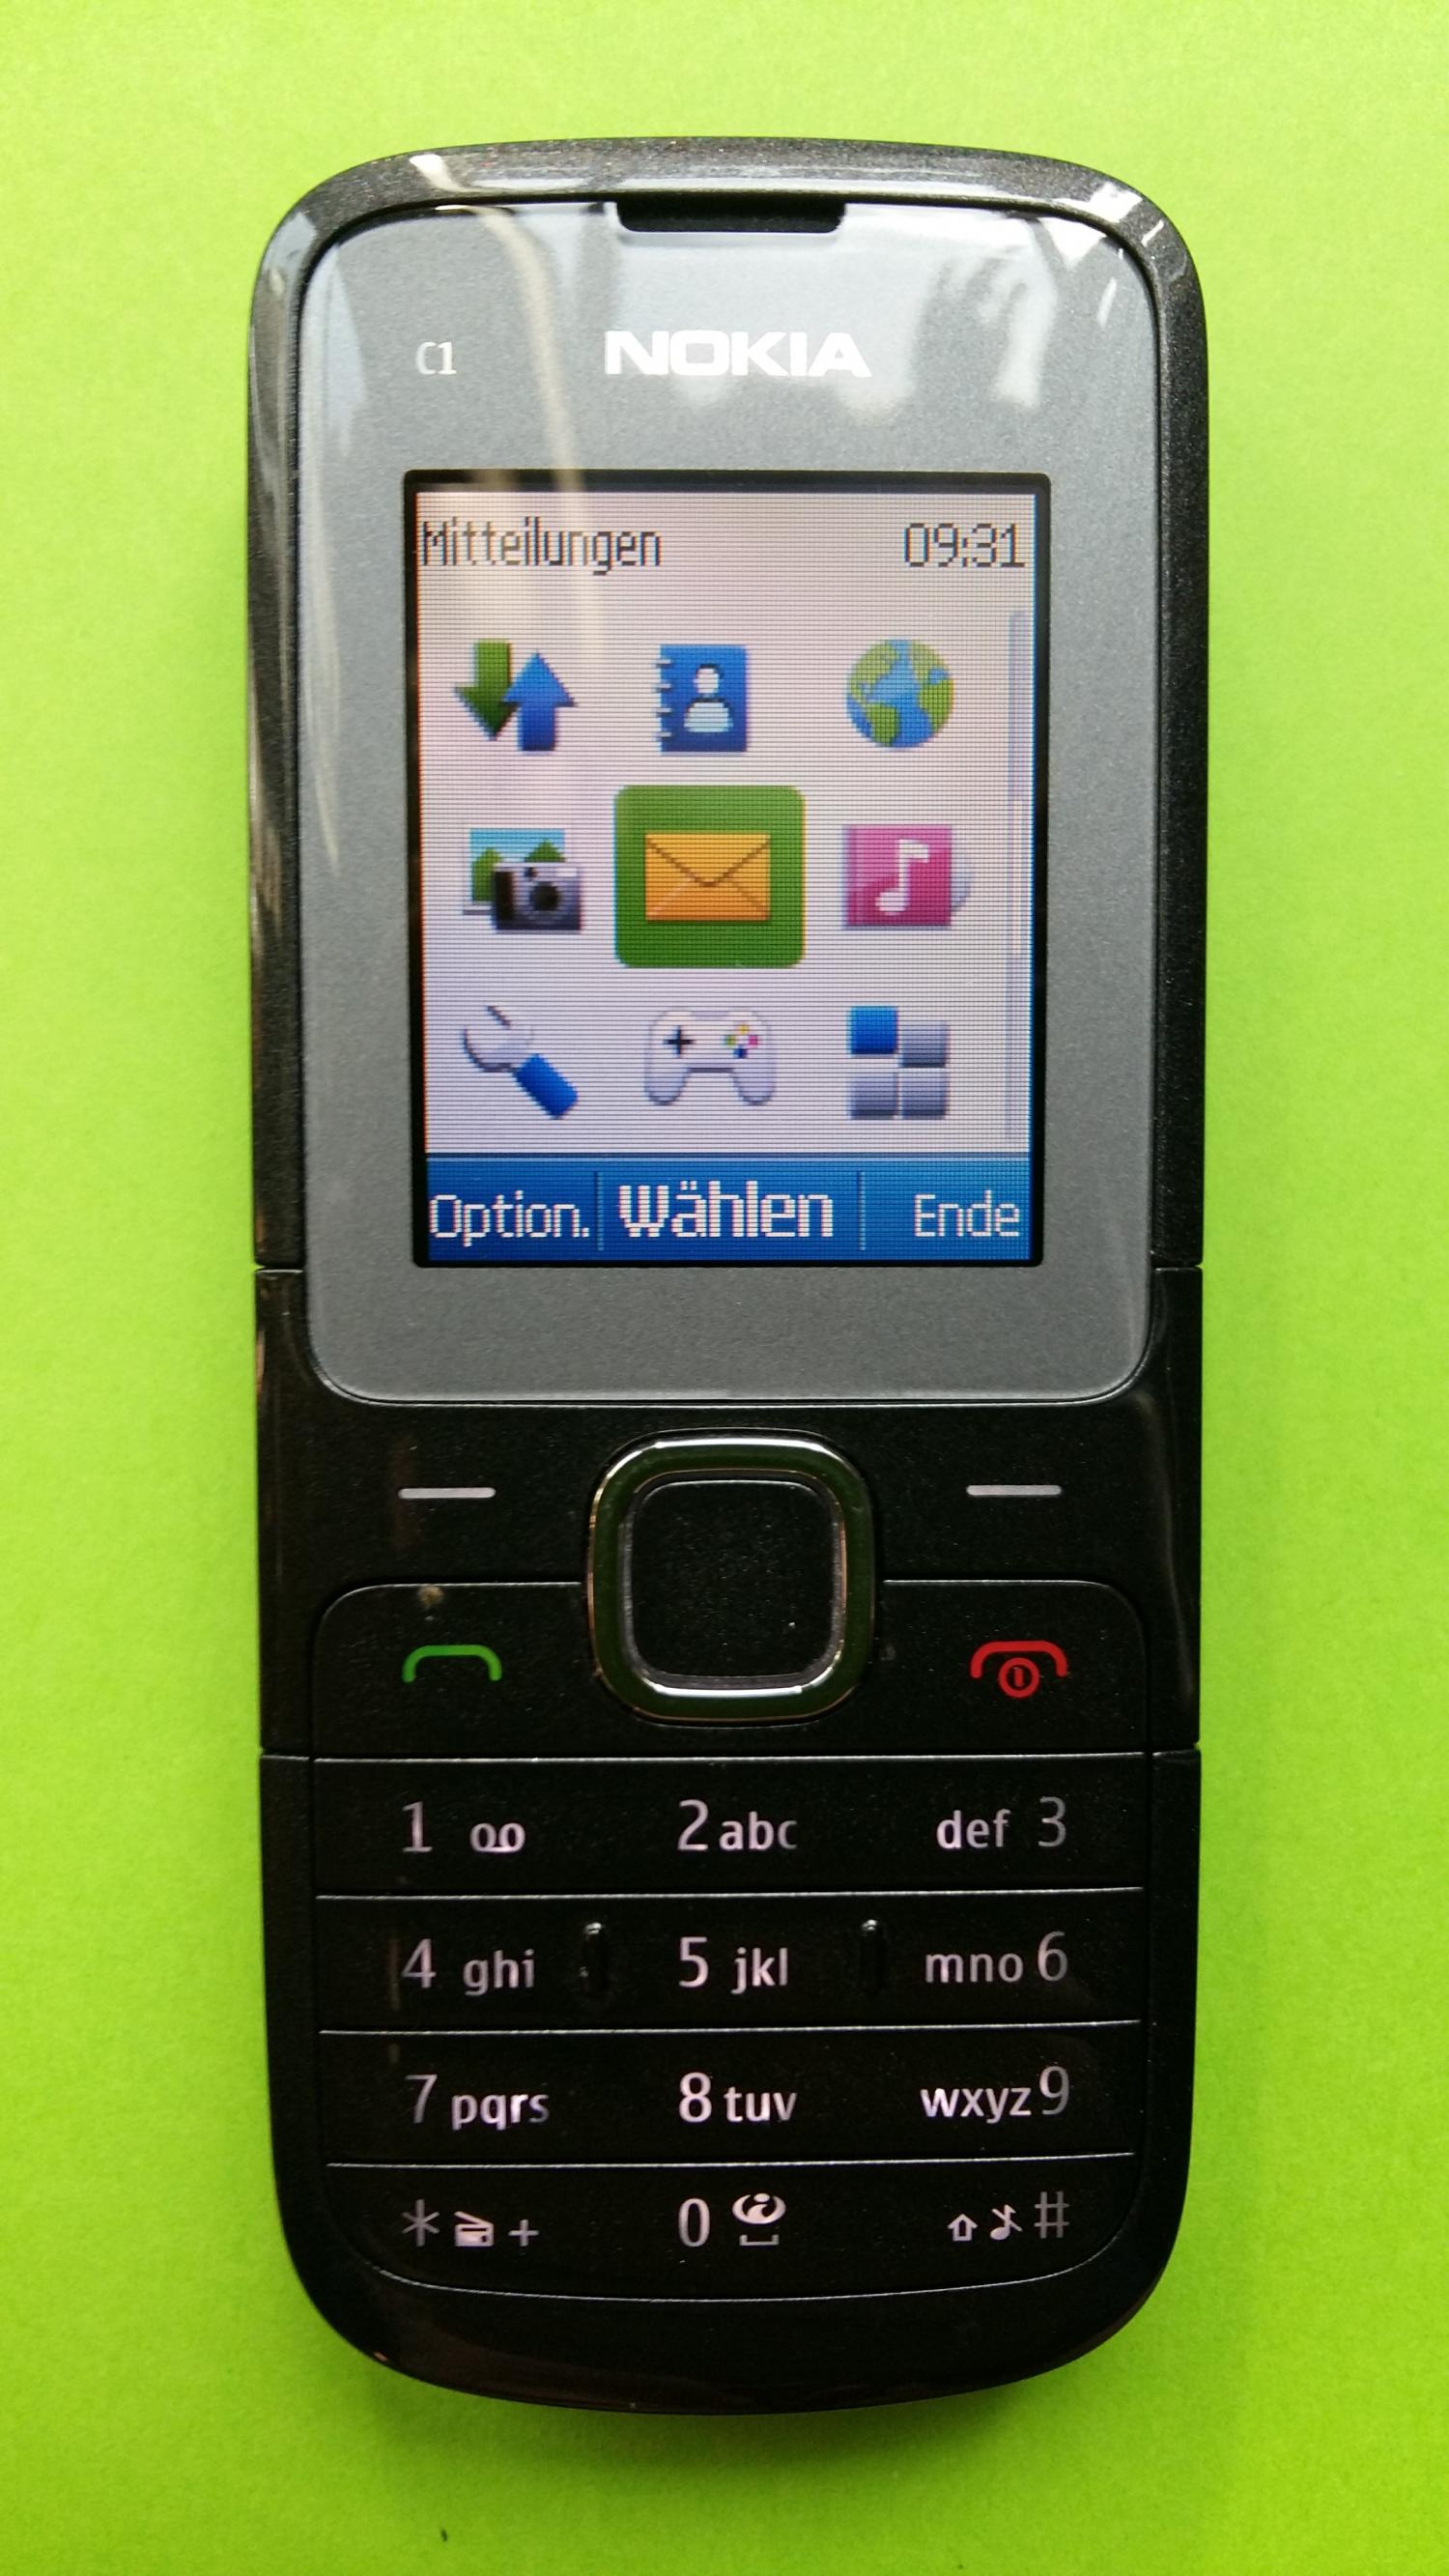 image-7308739-Nokia C1-01 (3)1.jpg